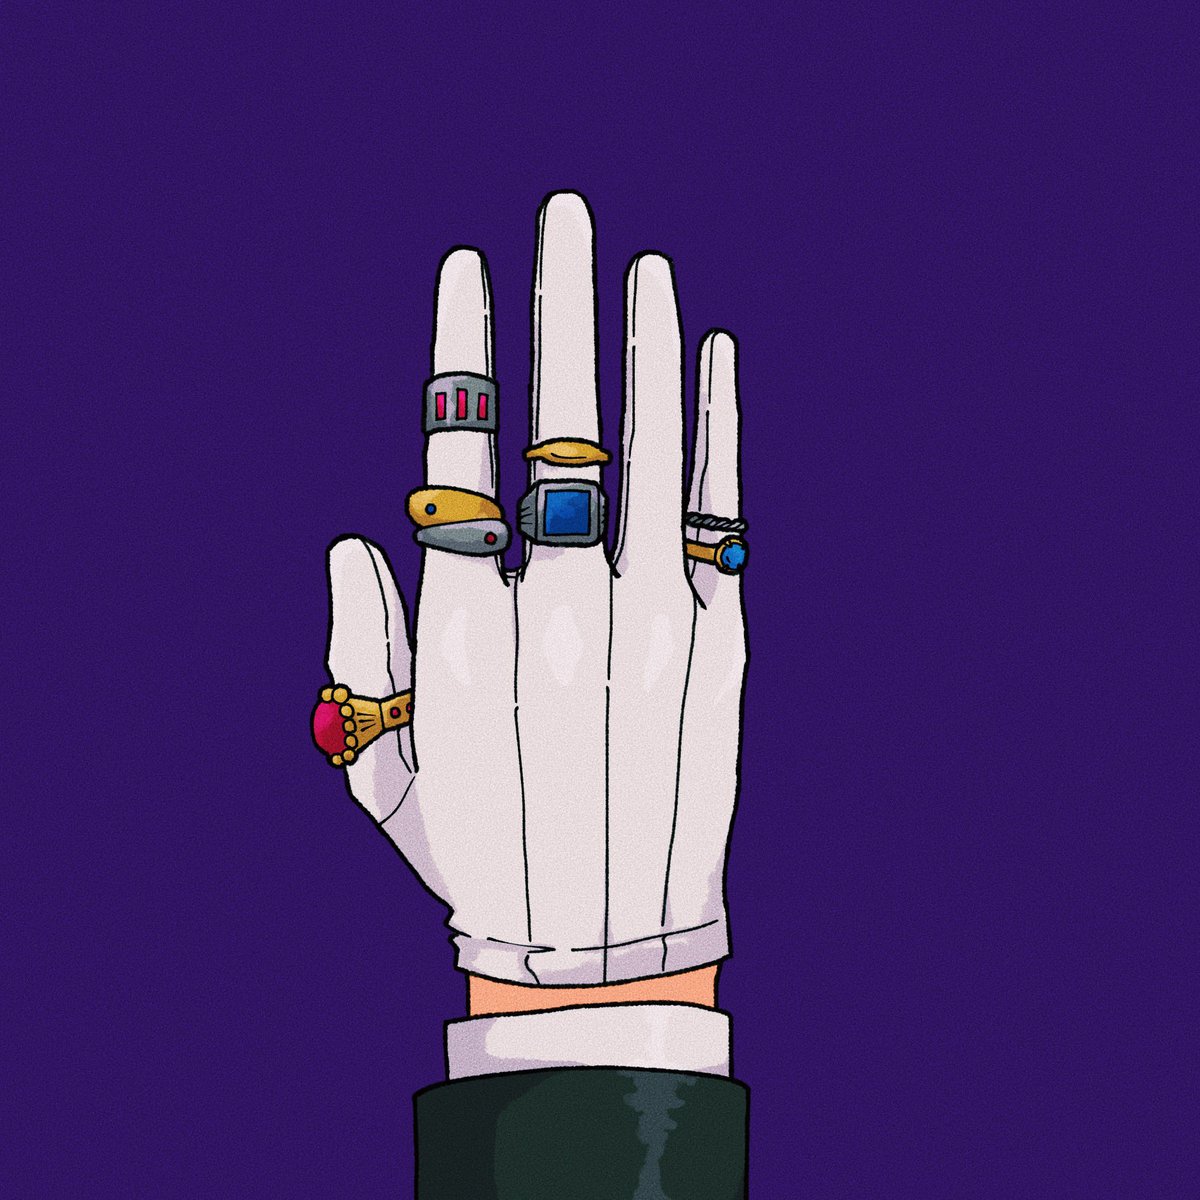 「手袋の上から指輪つけてるの大好きなんですがわかりますか??? 」|しらこのイラスト